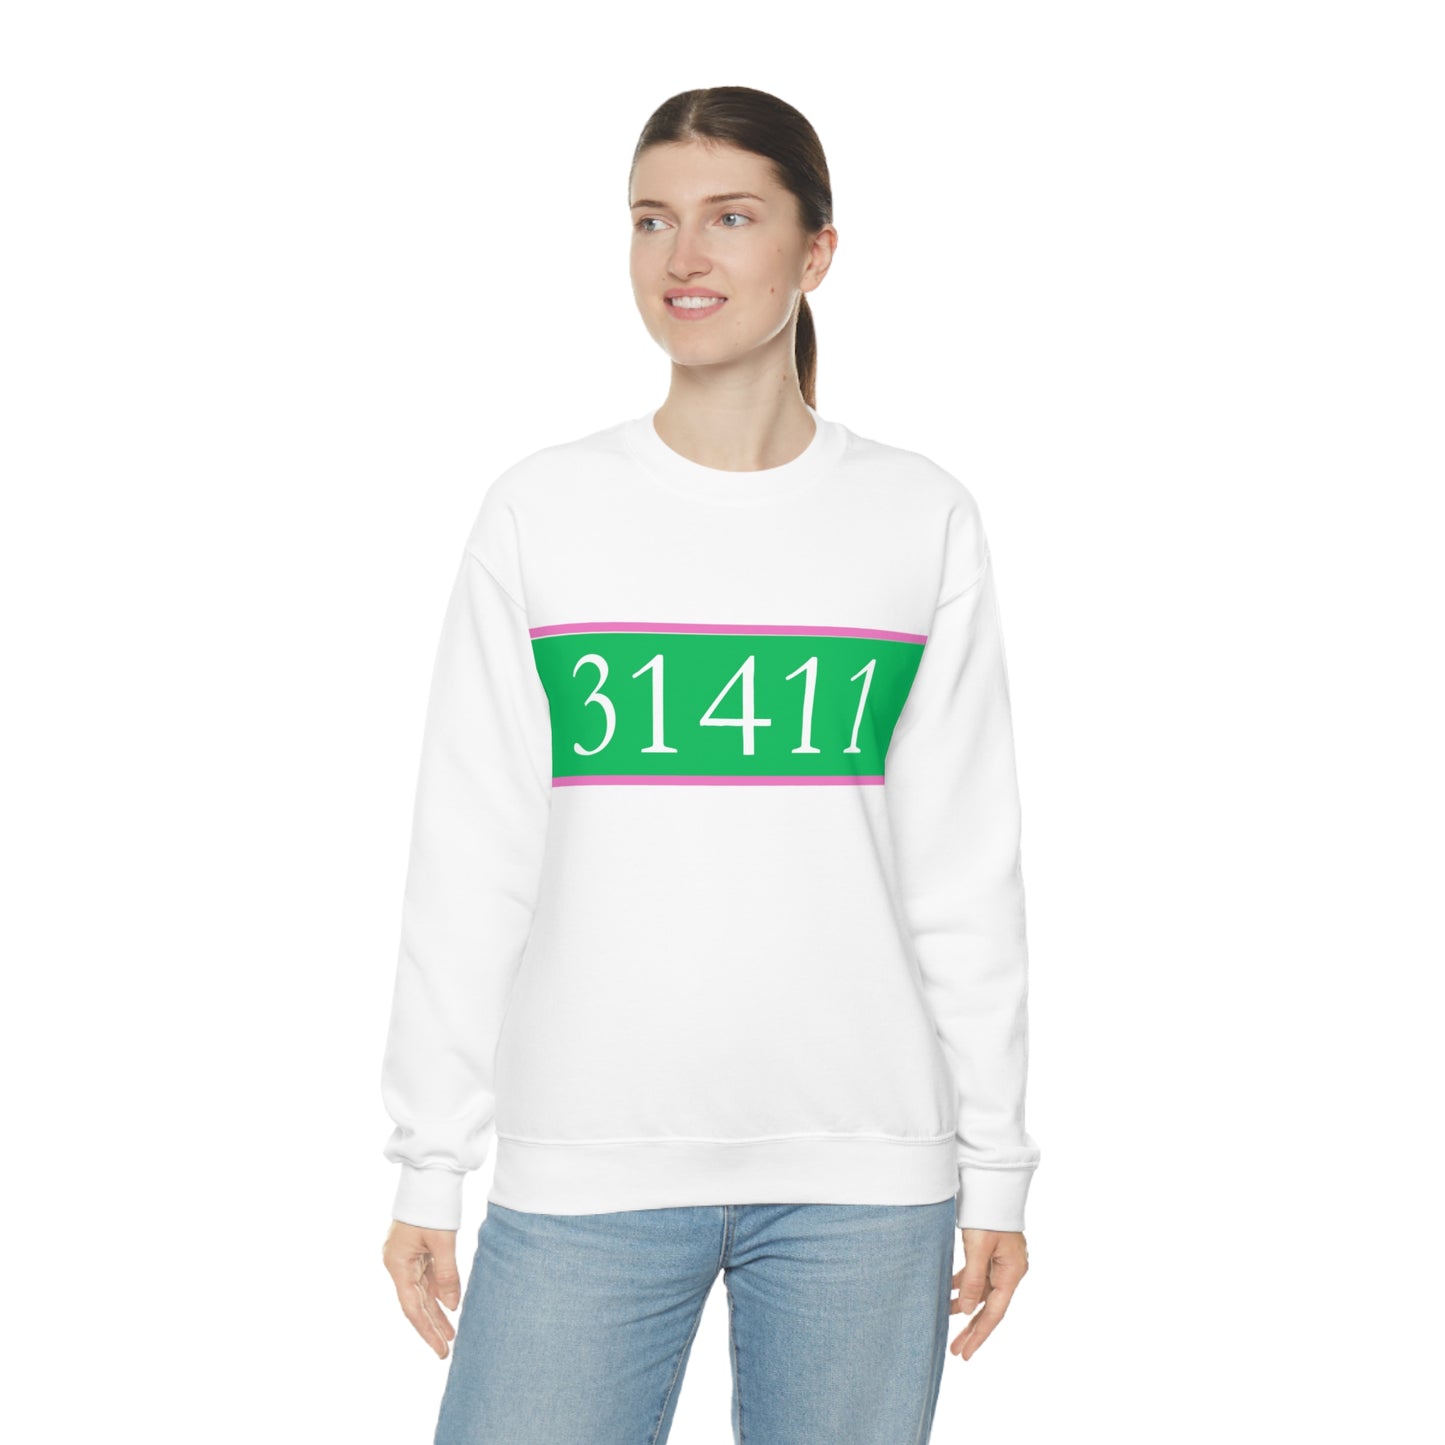 31411 sweatshirt